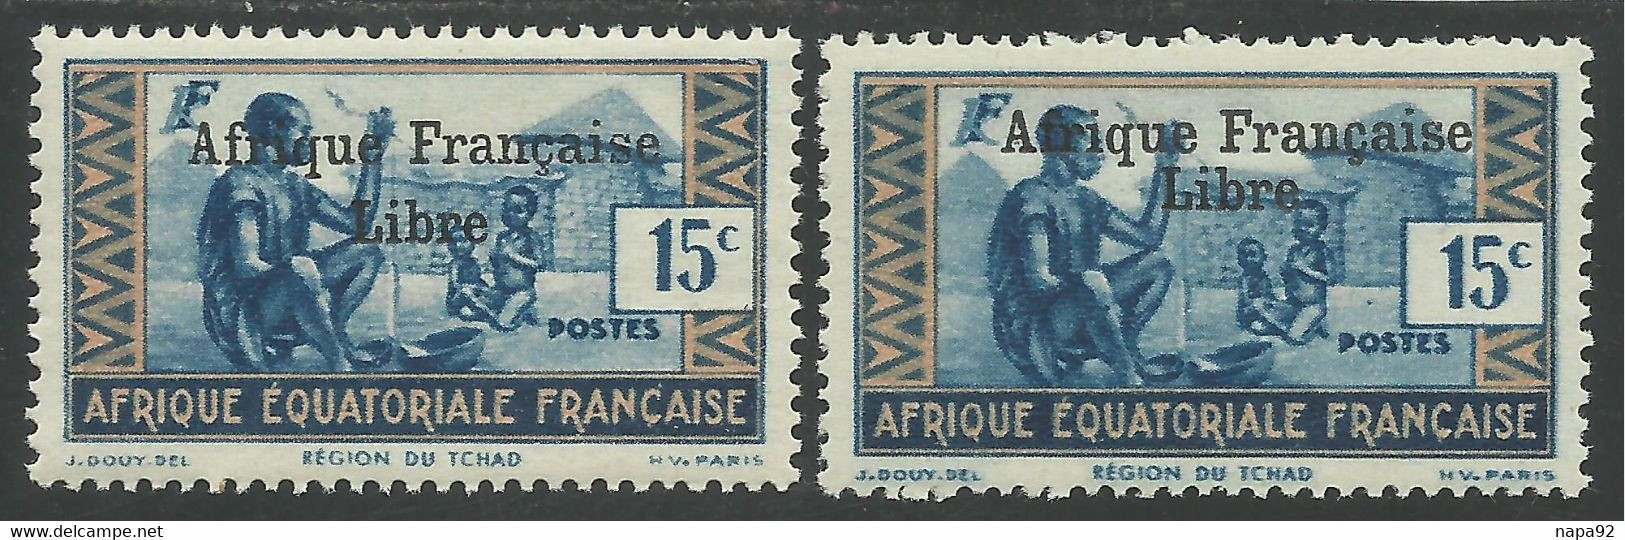 AFRIQUE EQUATORIALE FRANCAISE - AEF - A.E.F. - 1941 - YT 161** - 2ème TIRAGE - Neufs